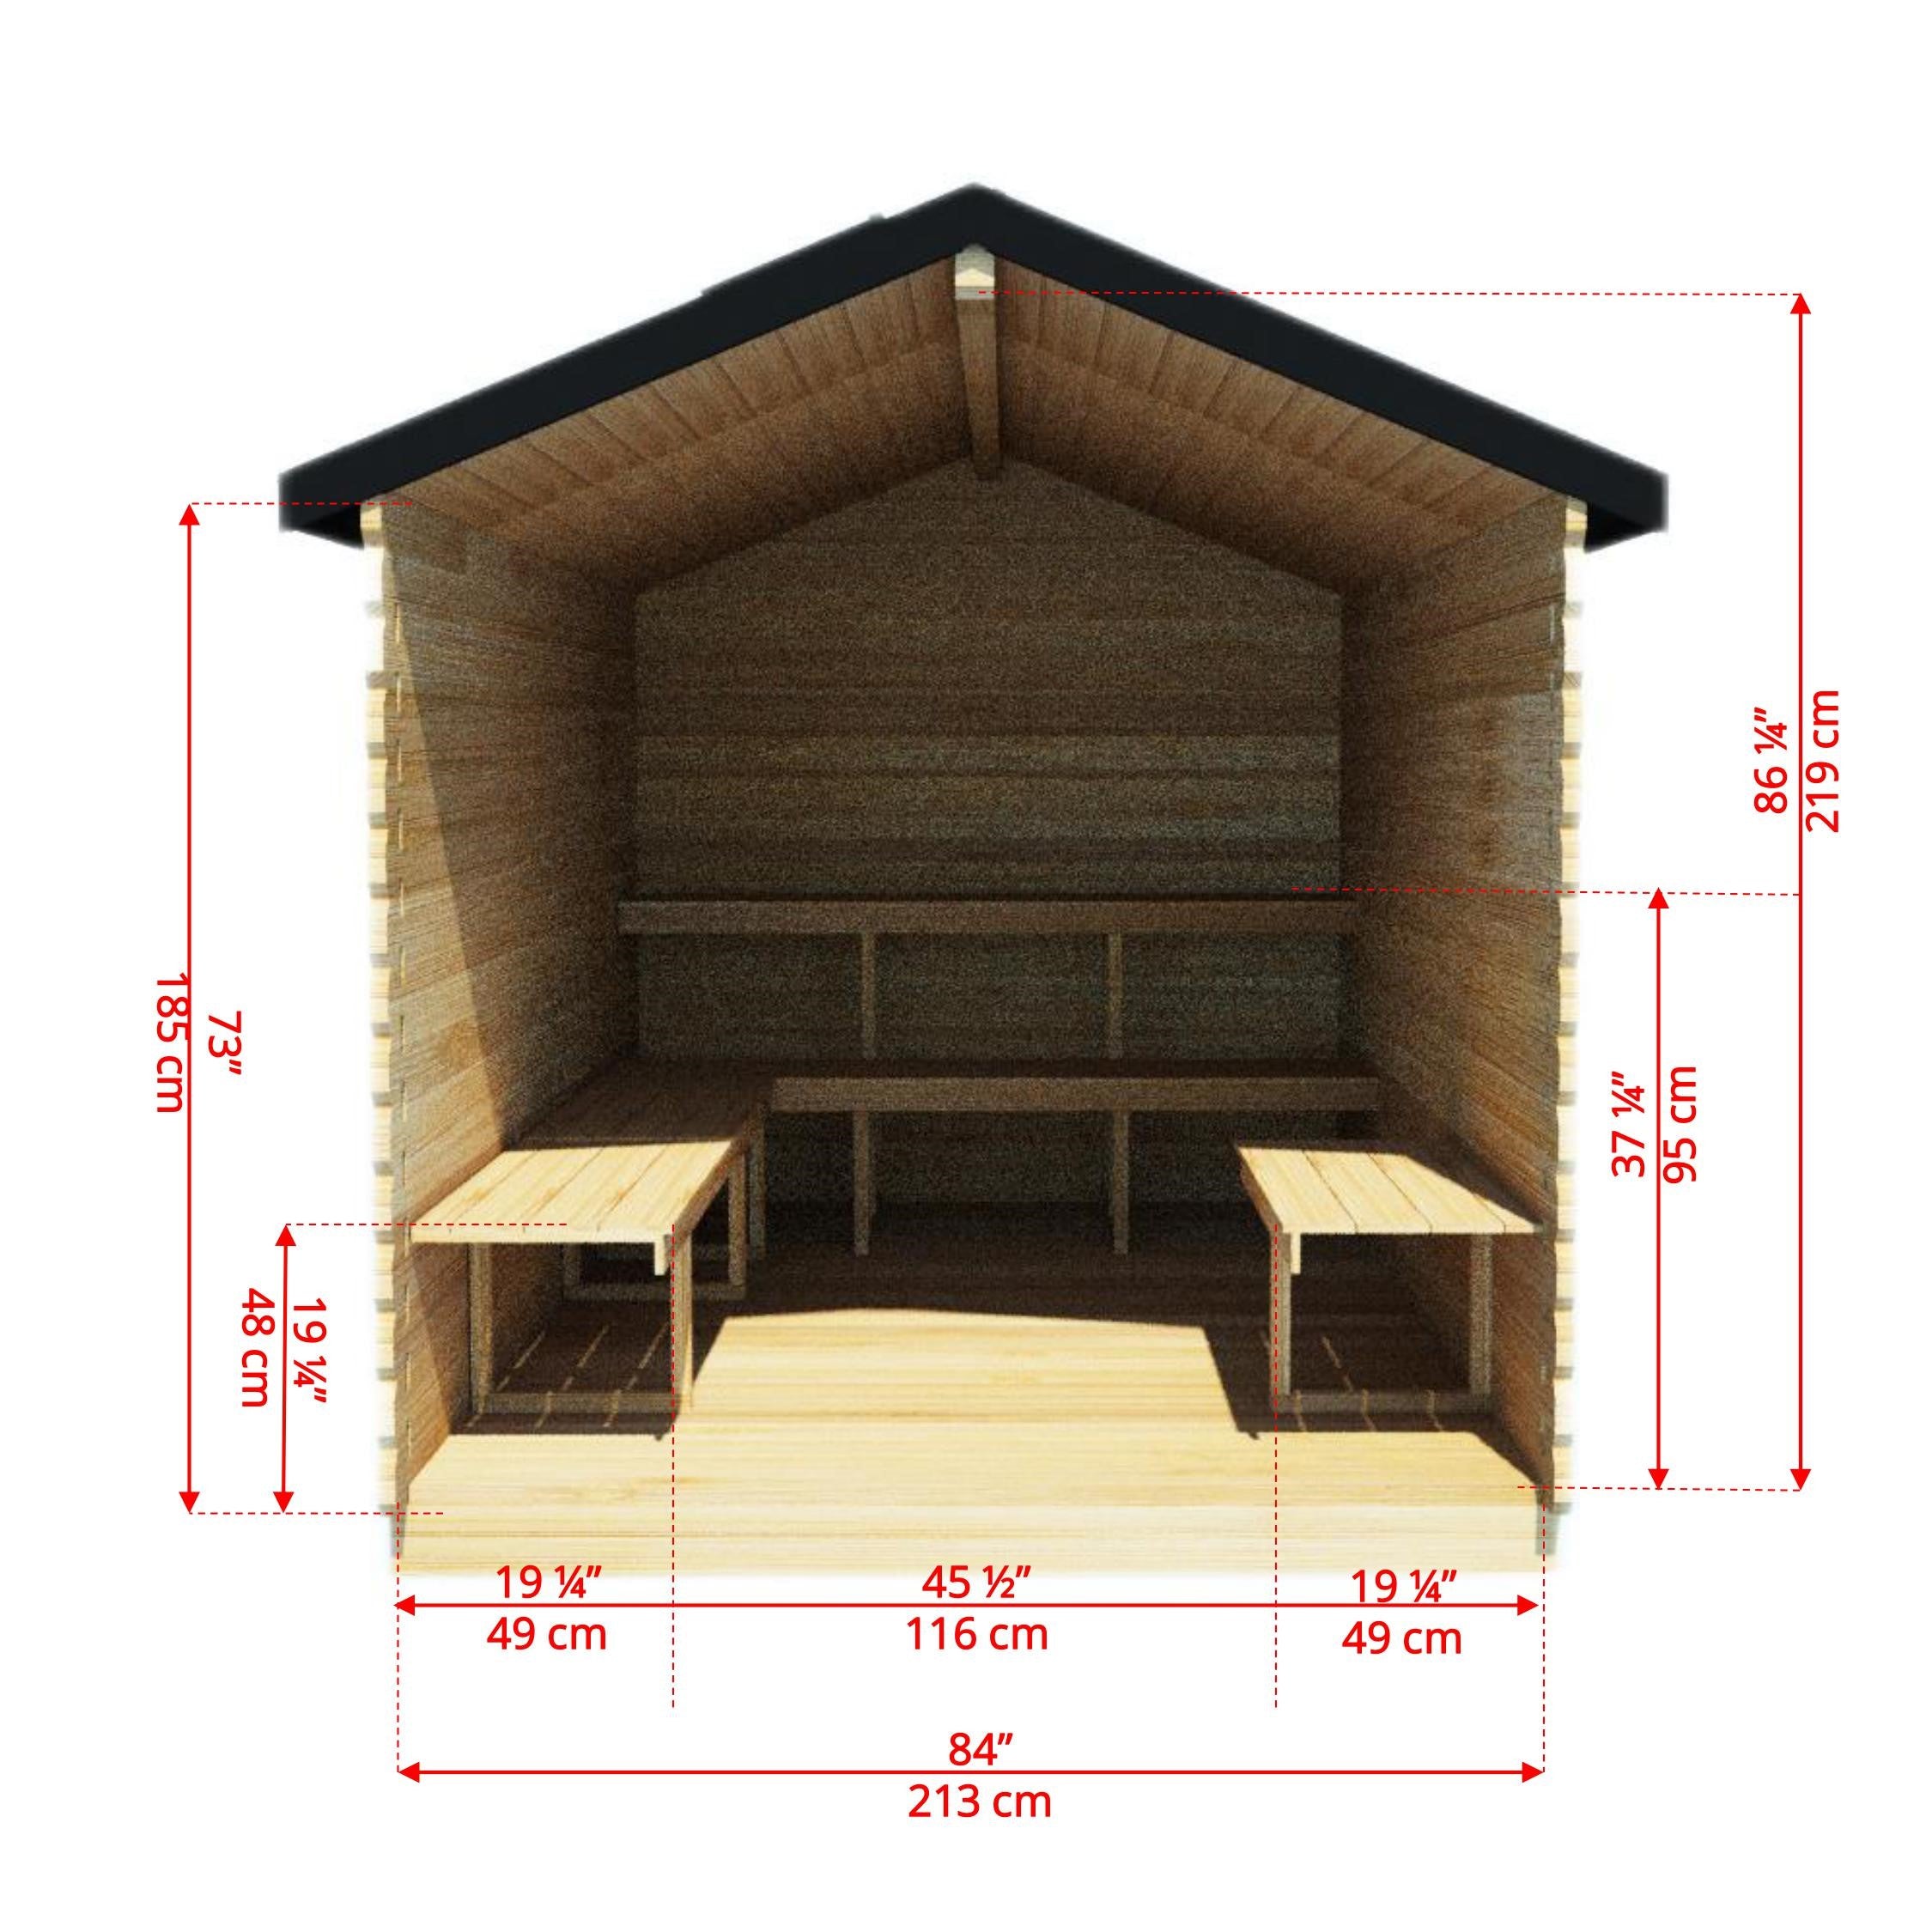 Dundalk Leisurecraft CT Georgian Cabin 6 Person Sauna with Changeroom